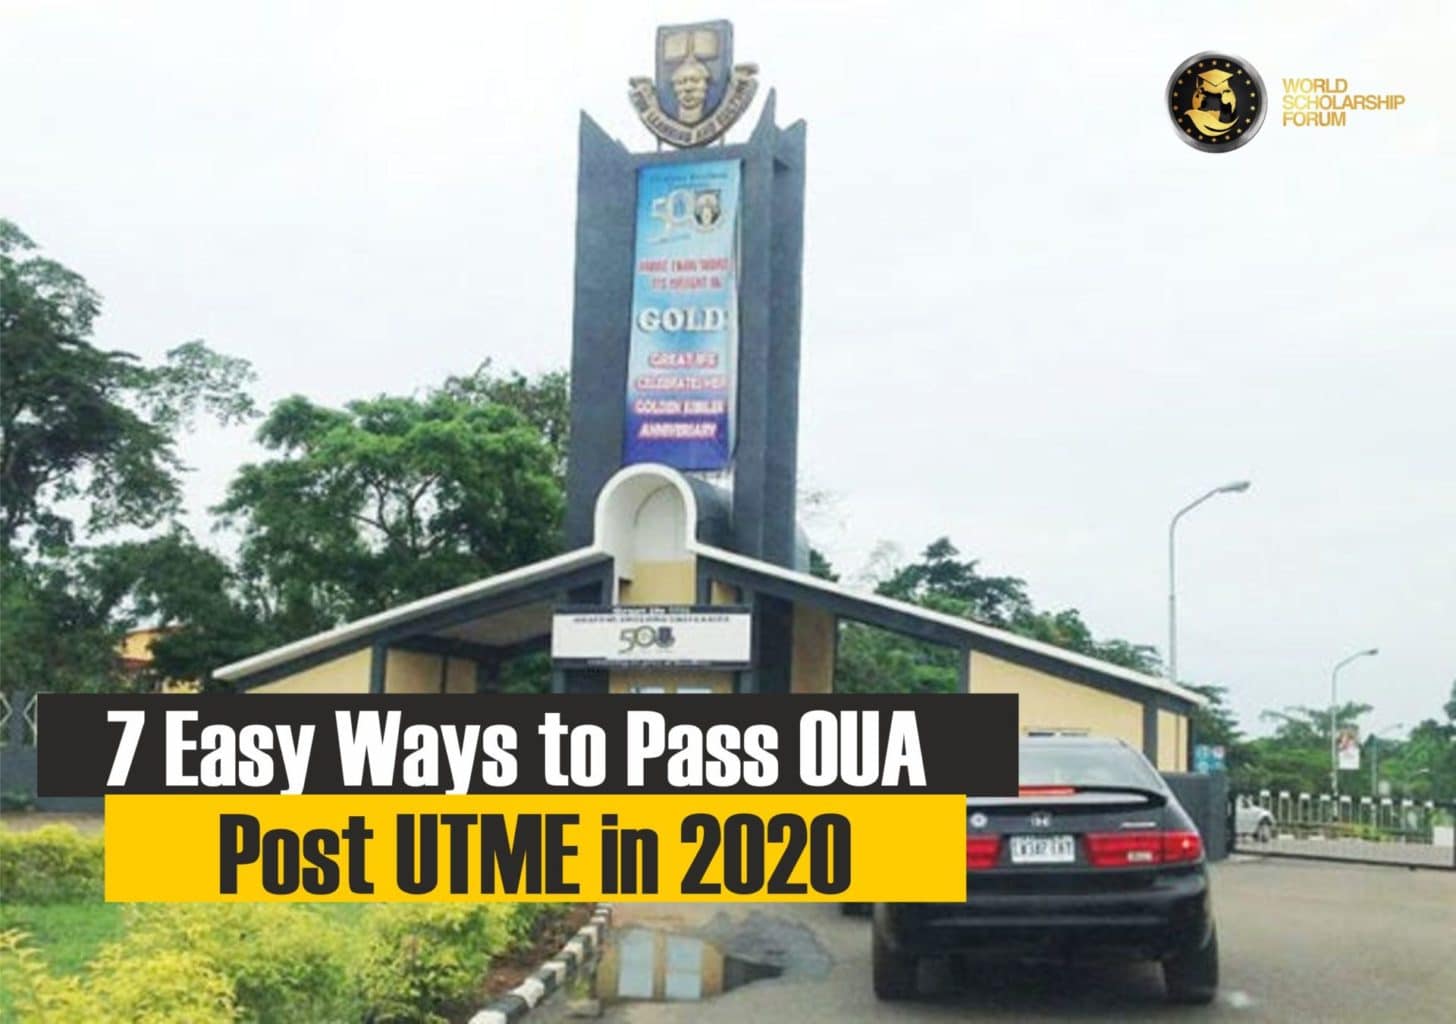 Τρόποι για να περάσετε το OAU Post-Utme